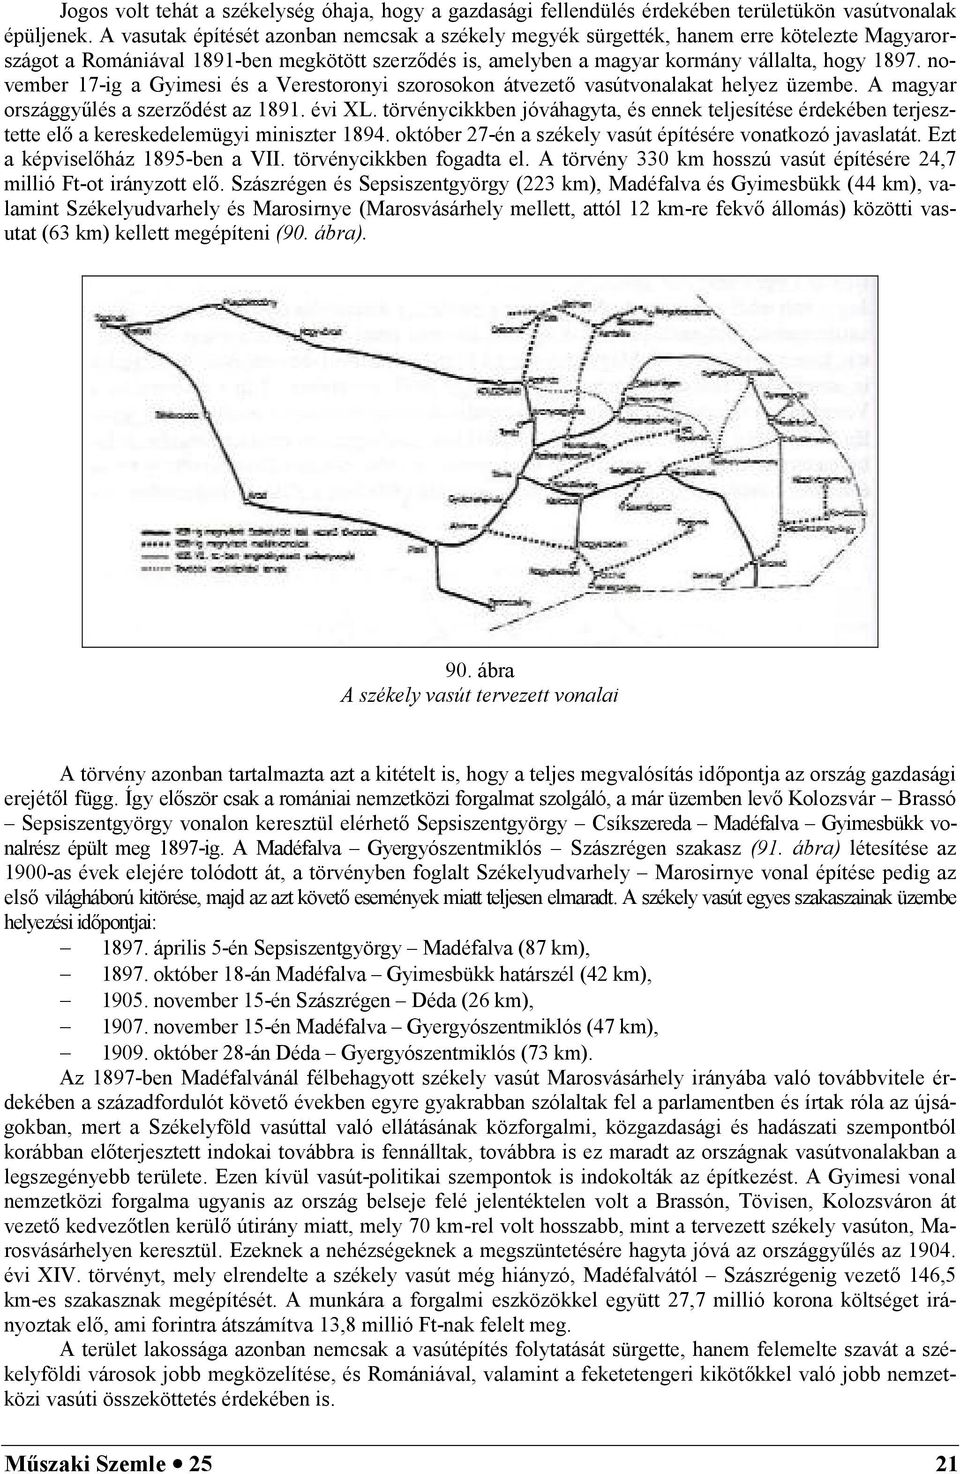 november 17-ig a Gyimesi és a Verestoronyi szorosokon átvezet vasútvonalakat helyez üzembe. A magyar országgy5lés a szerzdést az 1891. évi XL.